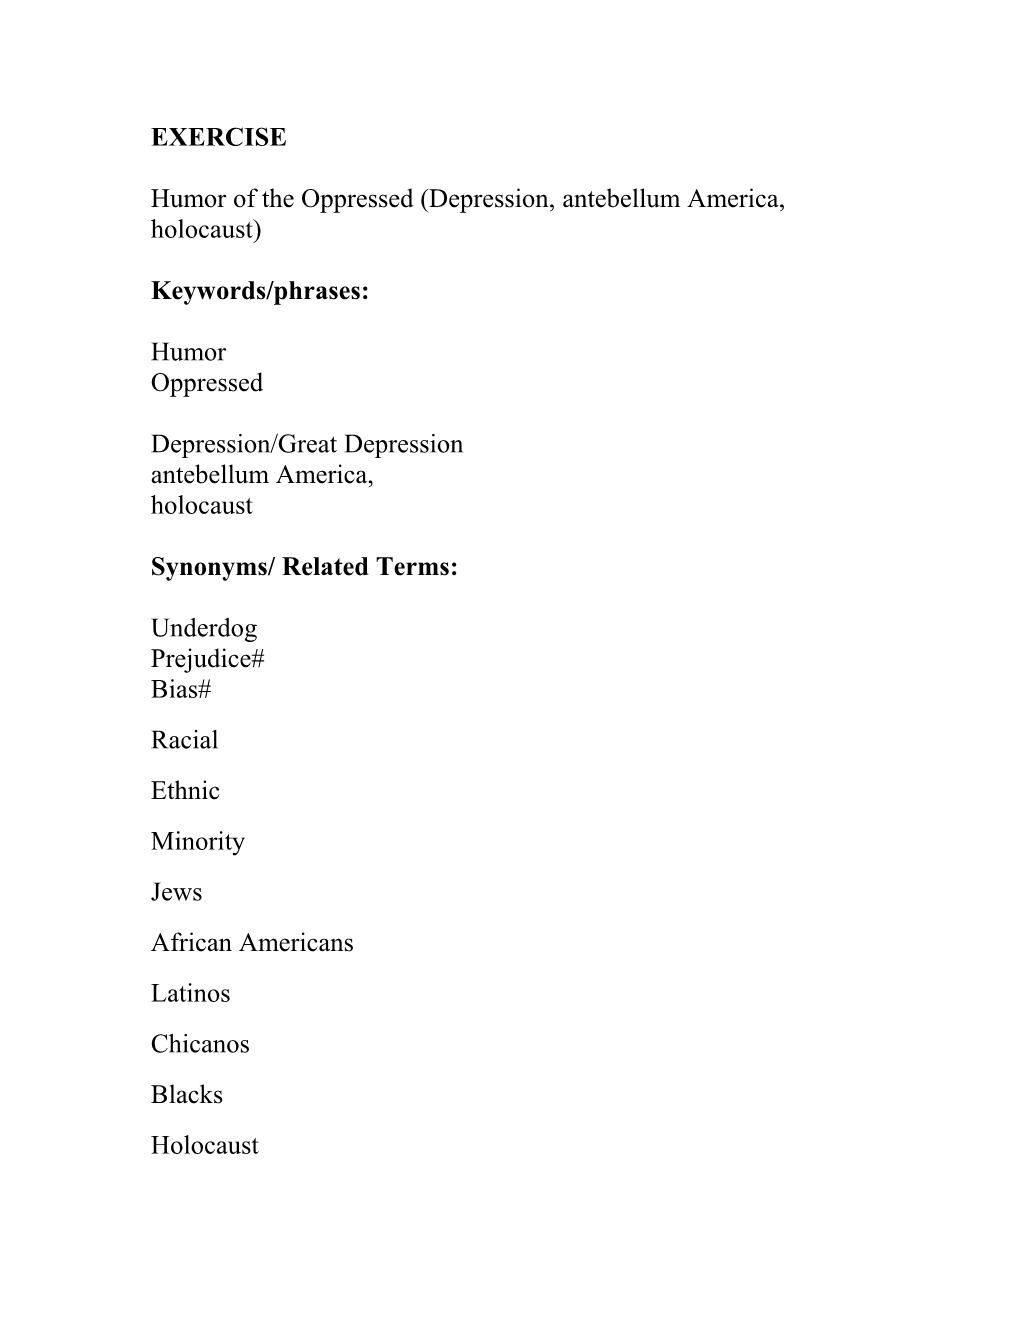 Humor of the Oppressed (Depression, Antebellum America, Holocaust)